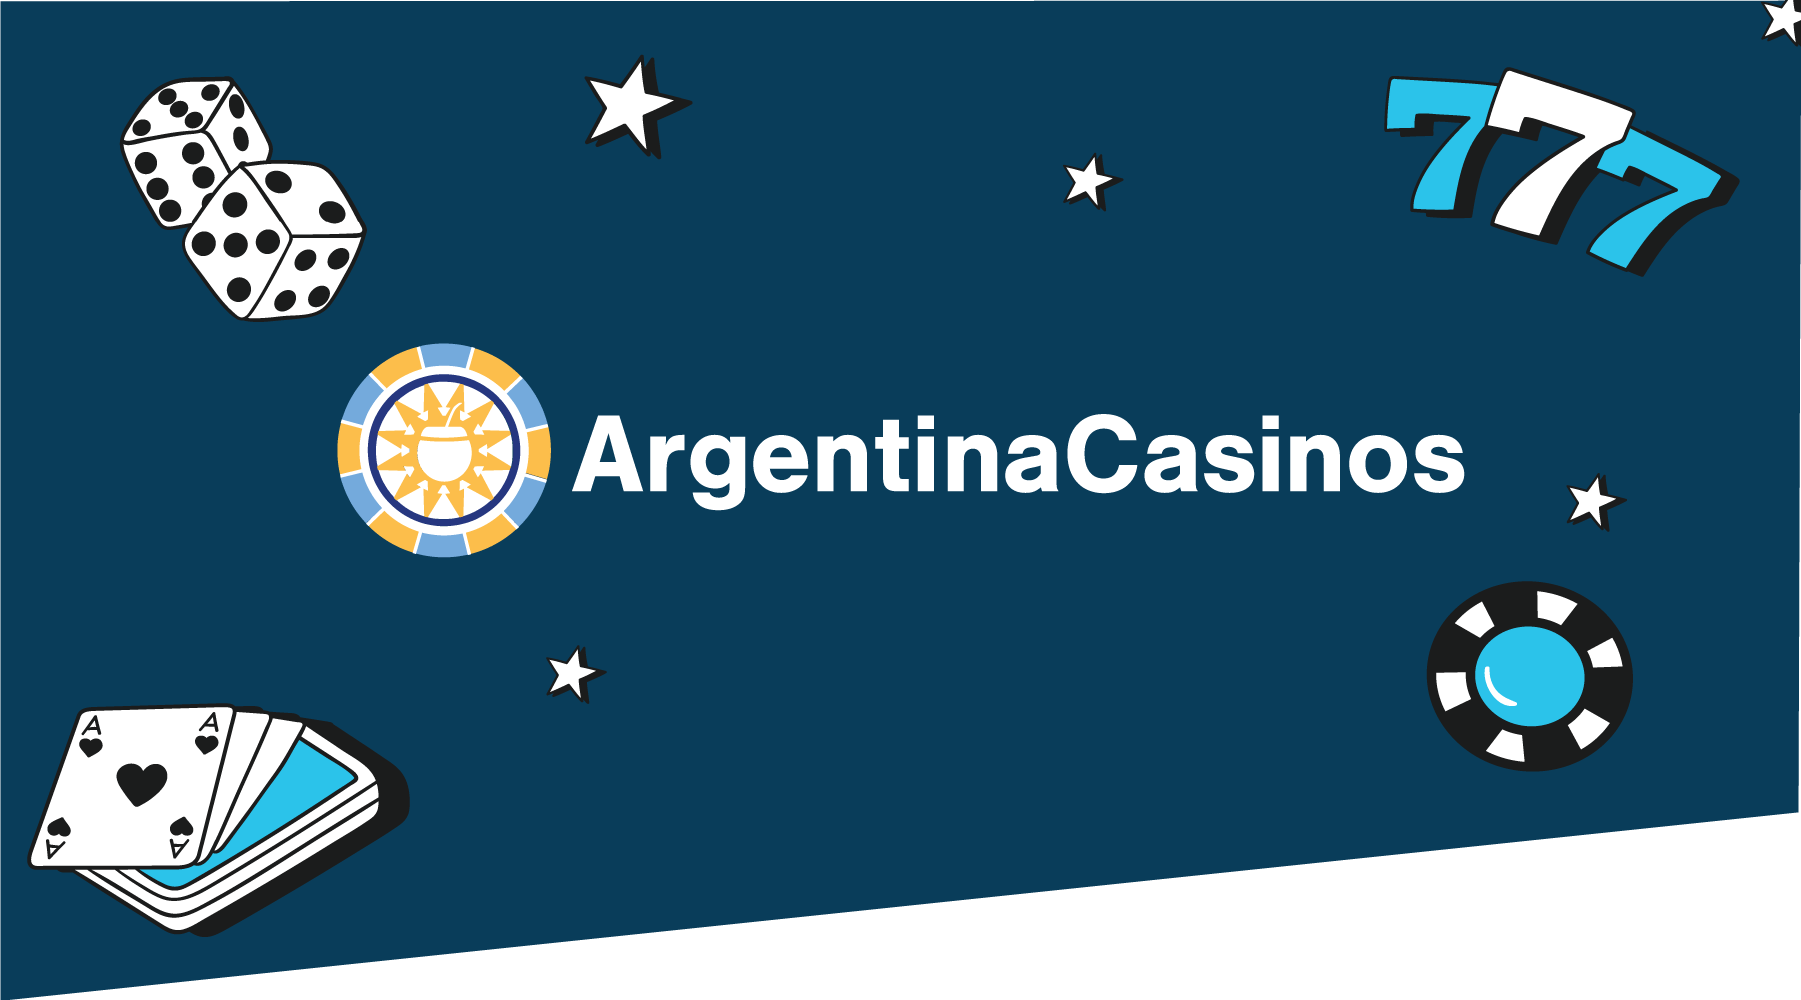 ¿Quieres más de tu vida? casino online para Argentina, casino online para Argentina, casino online para Argentina!